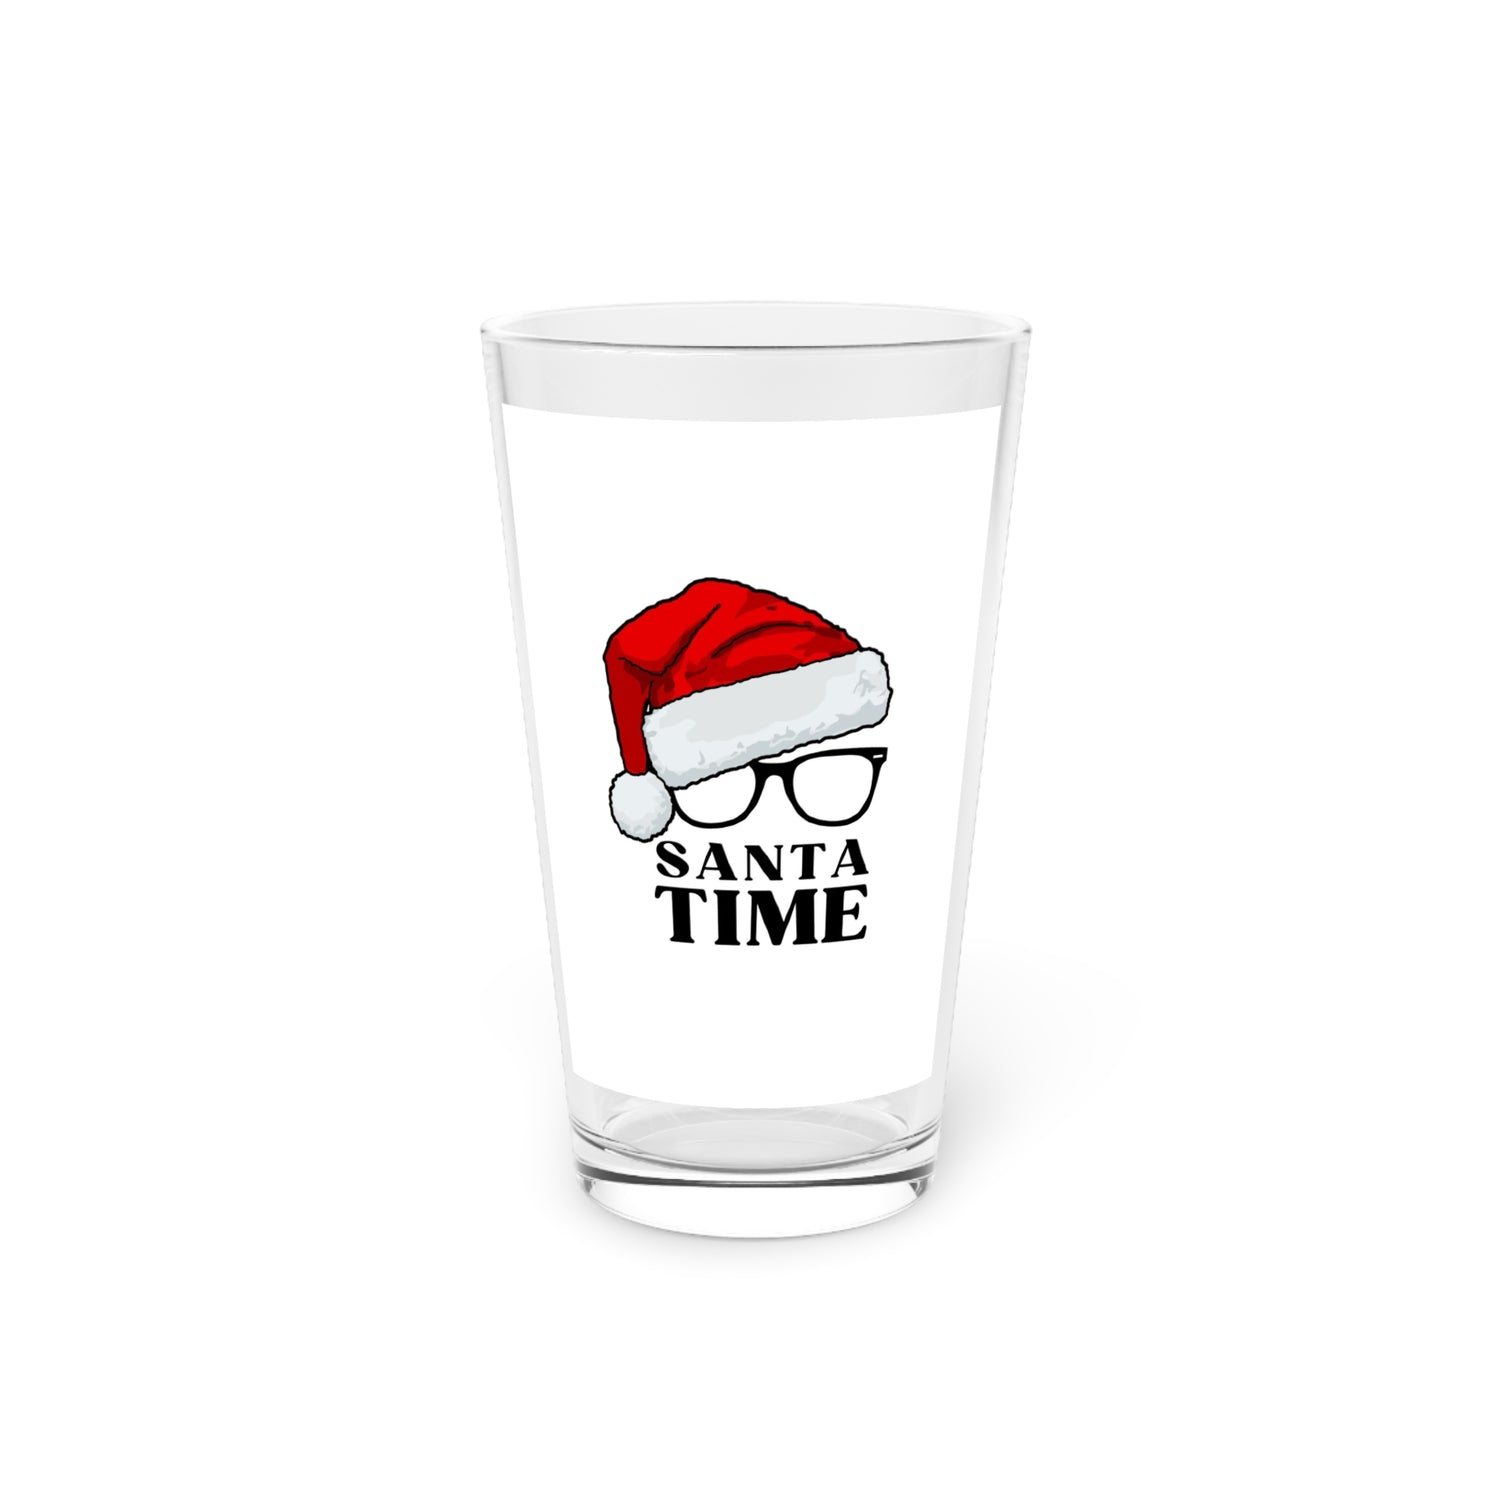 Santa Time Pint Glass, 16oz